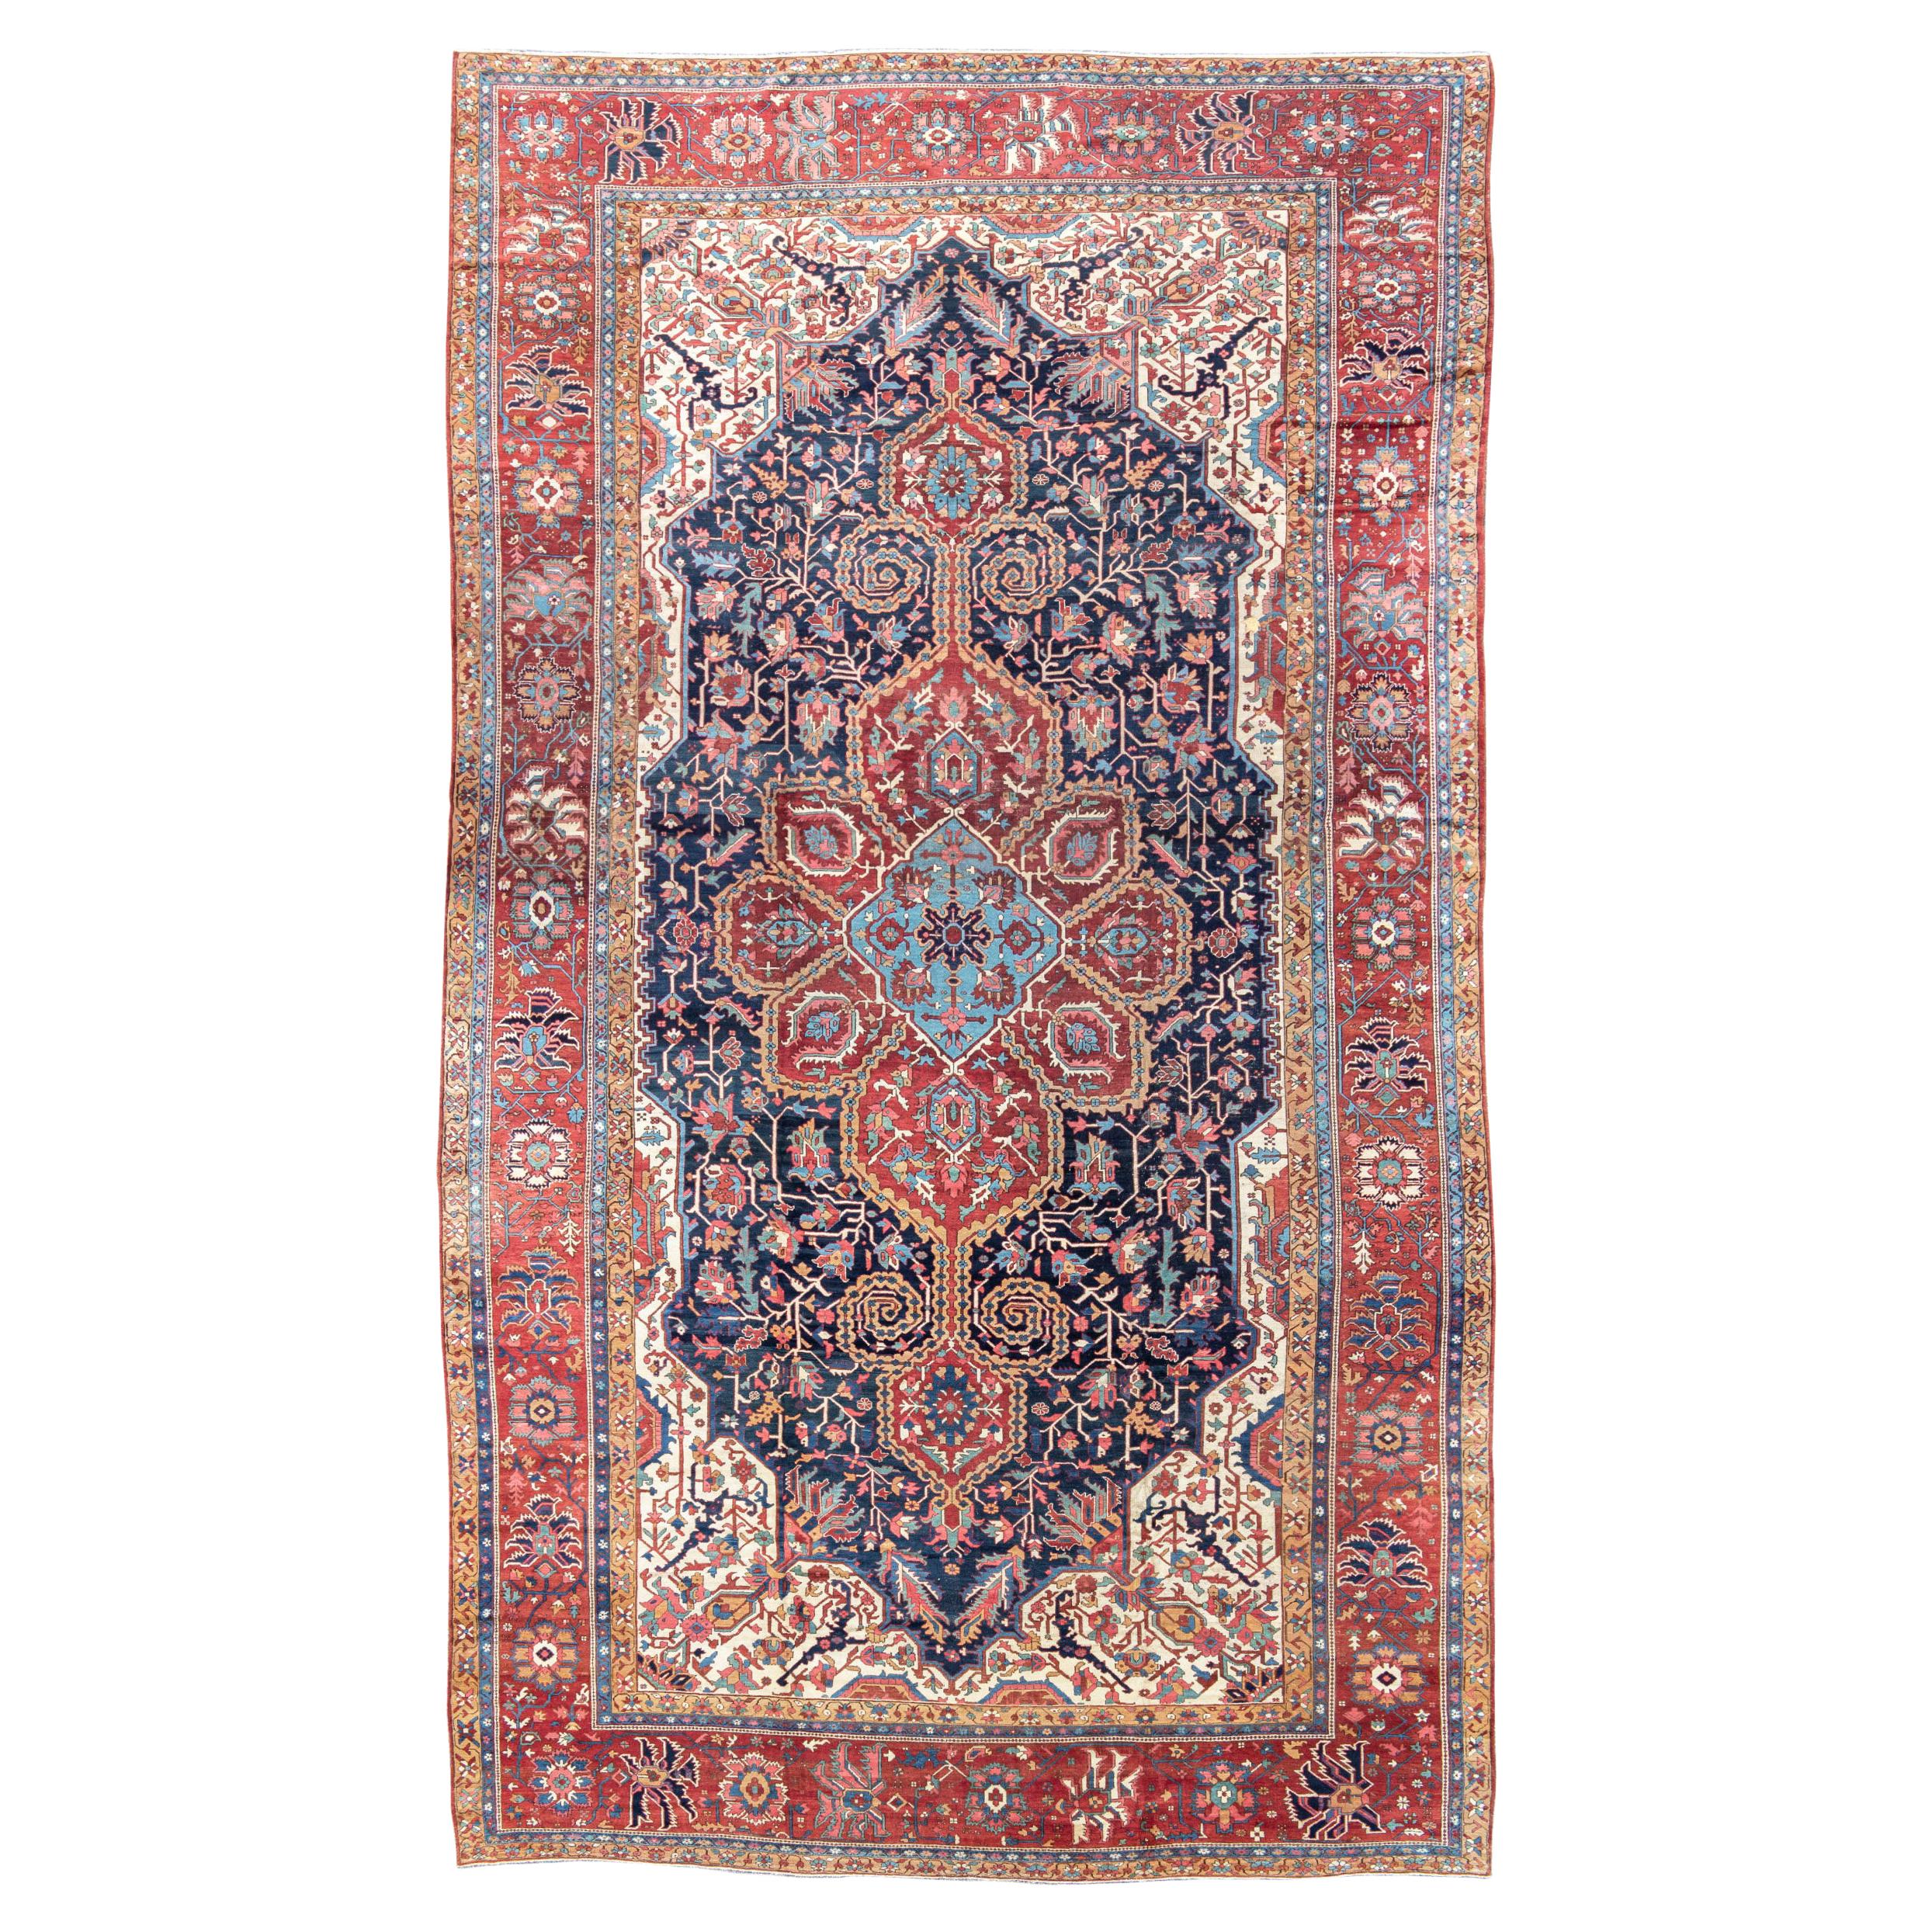 Antique Large Persian Serapi Carpet, 19th Century